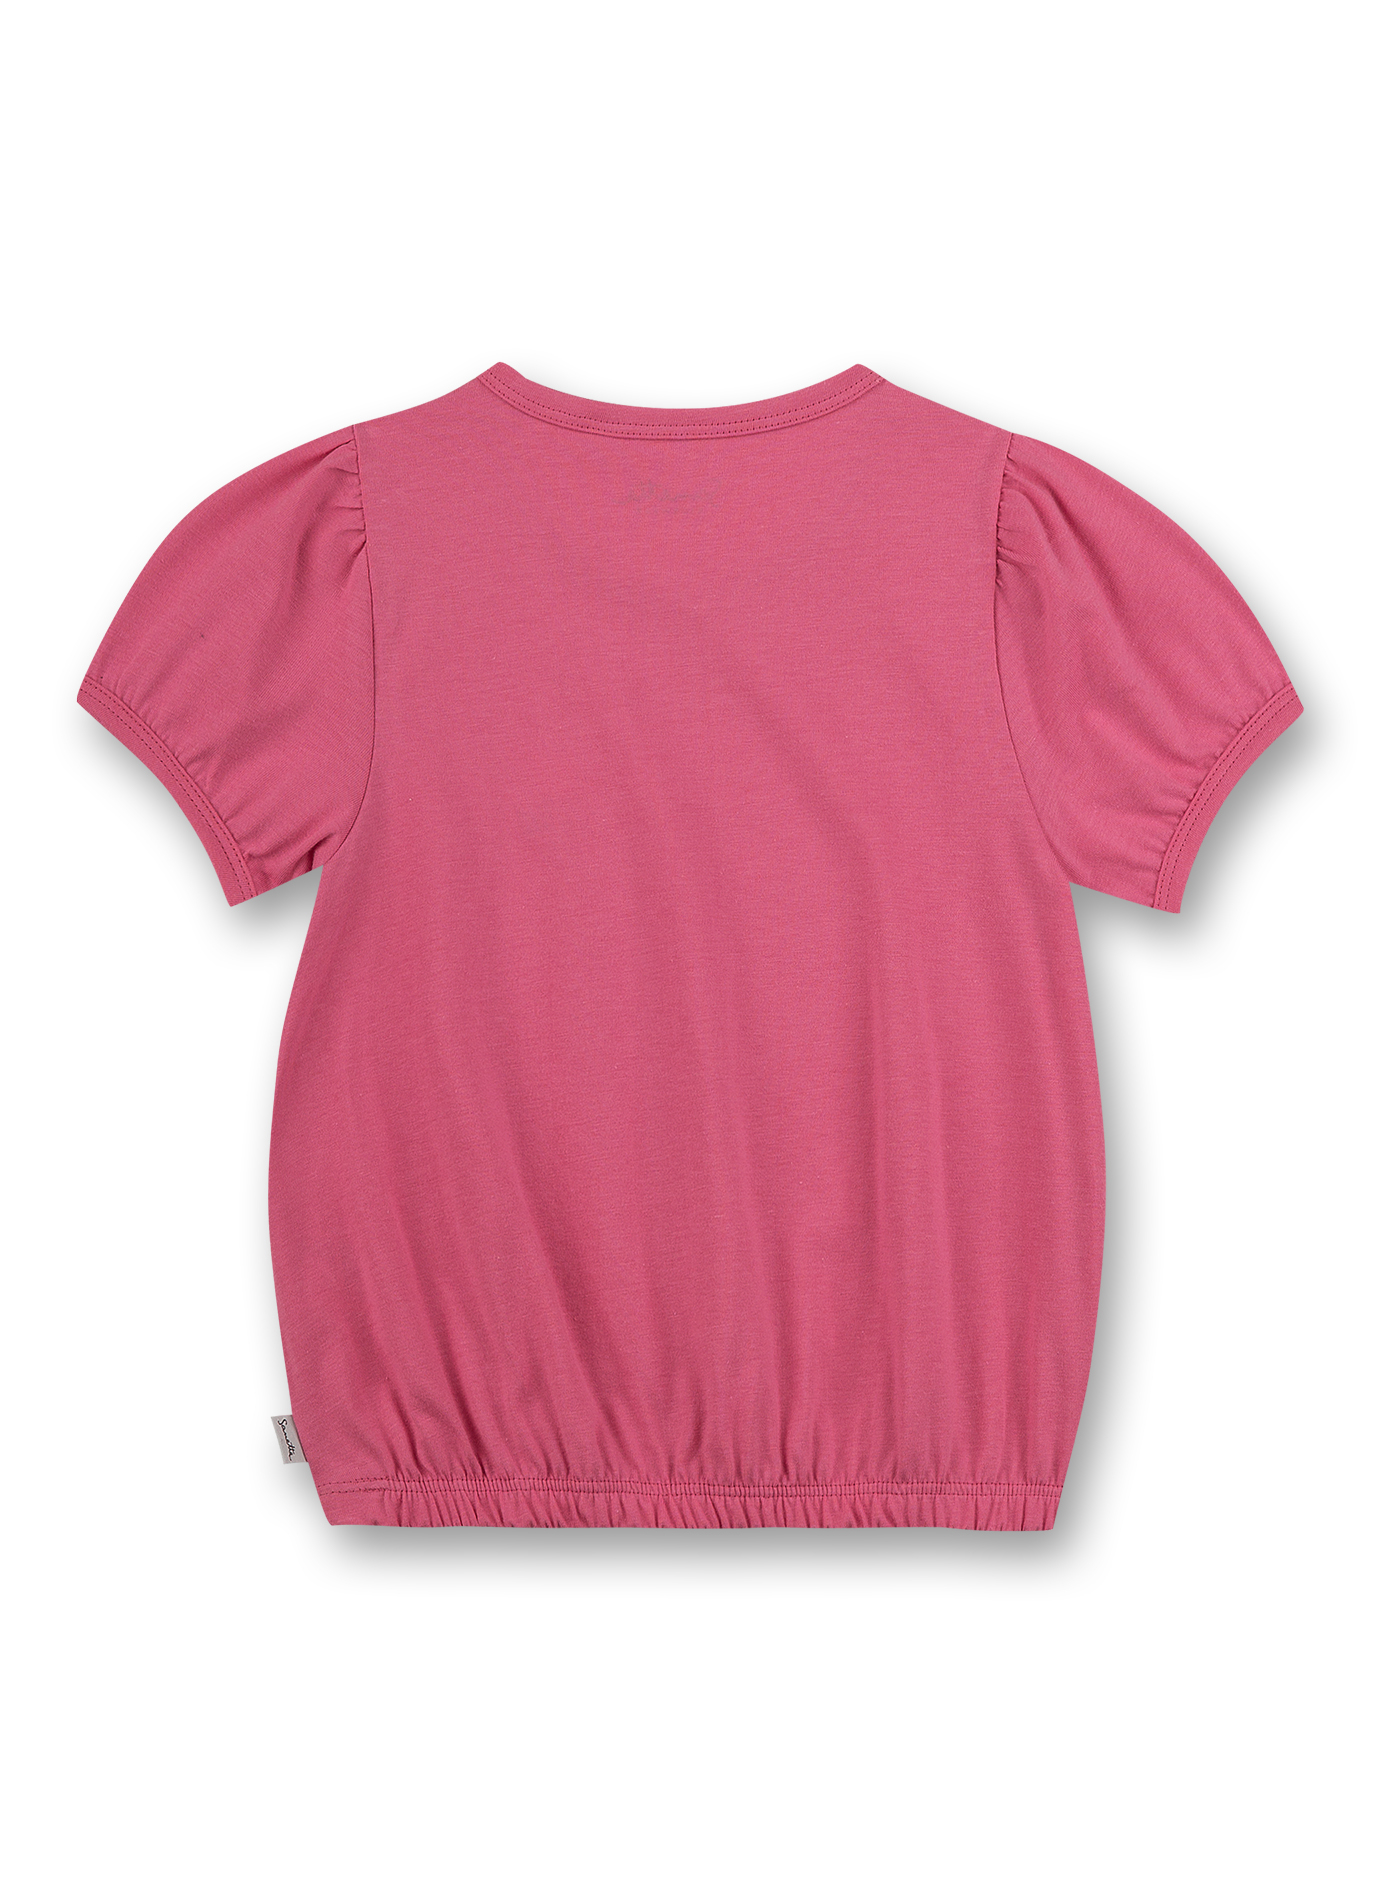 Mädchen T-Shirt Pink Flower